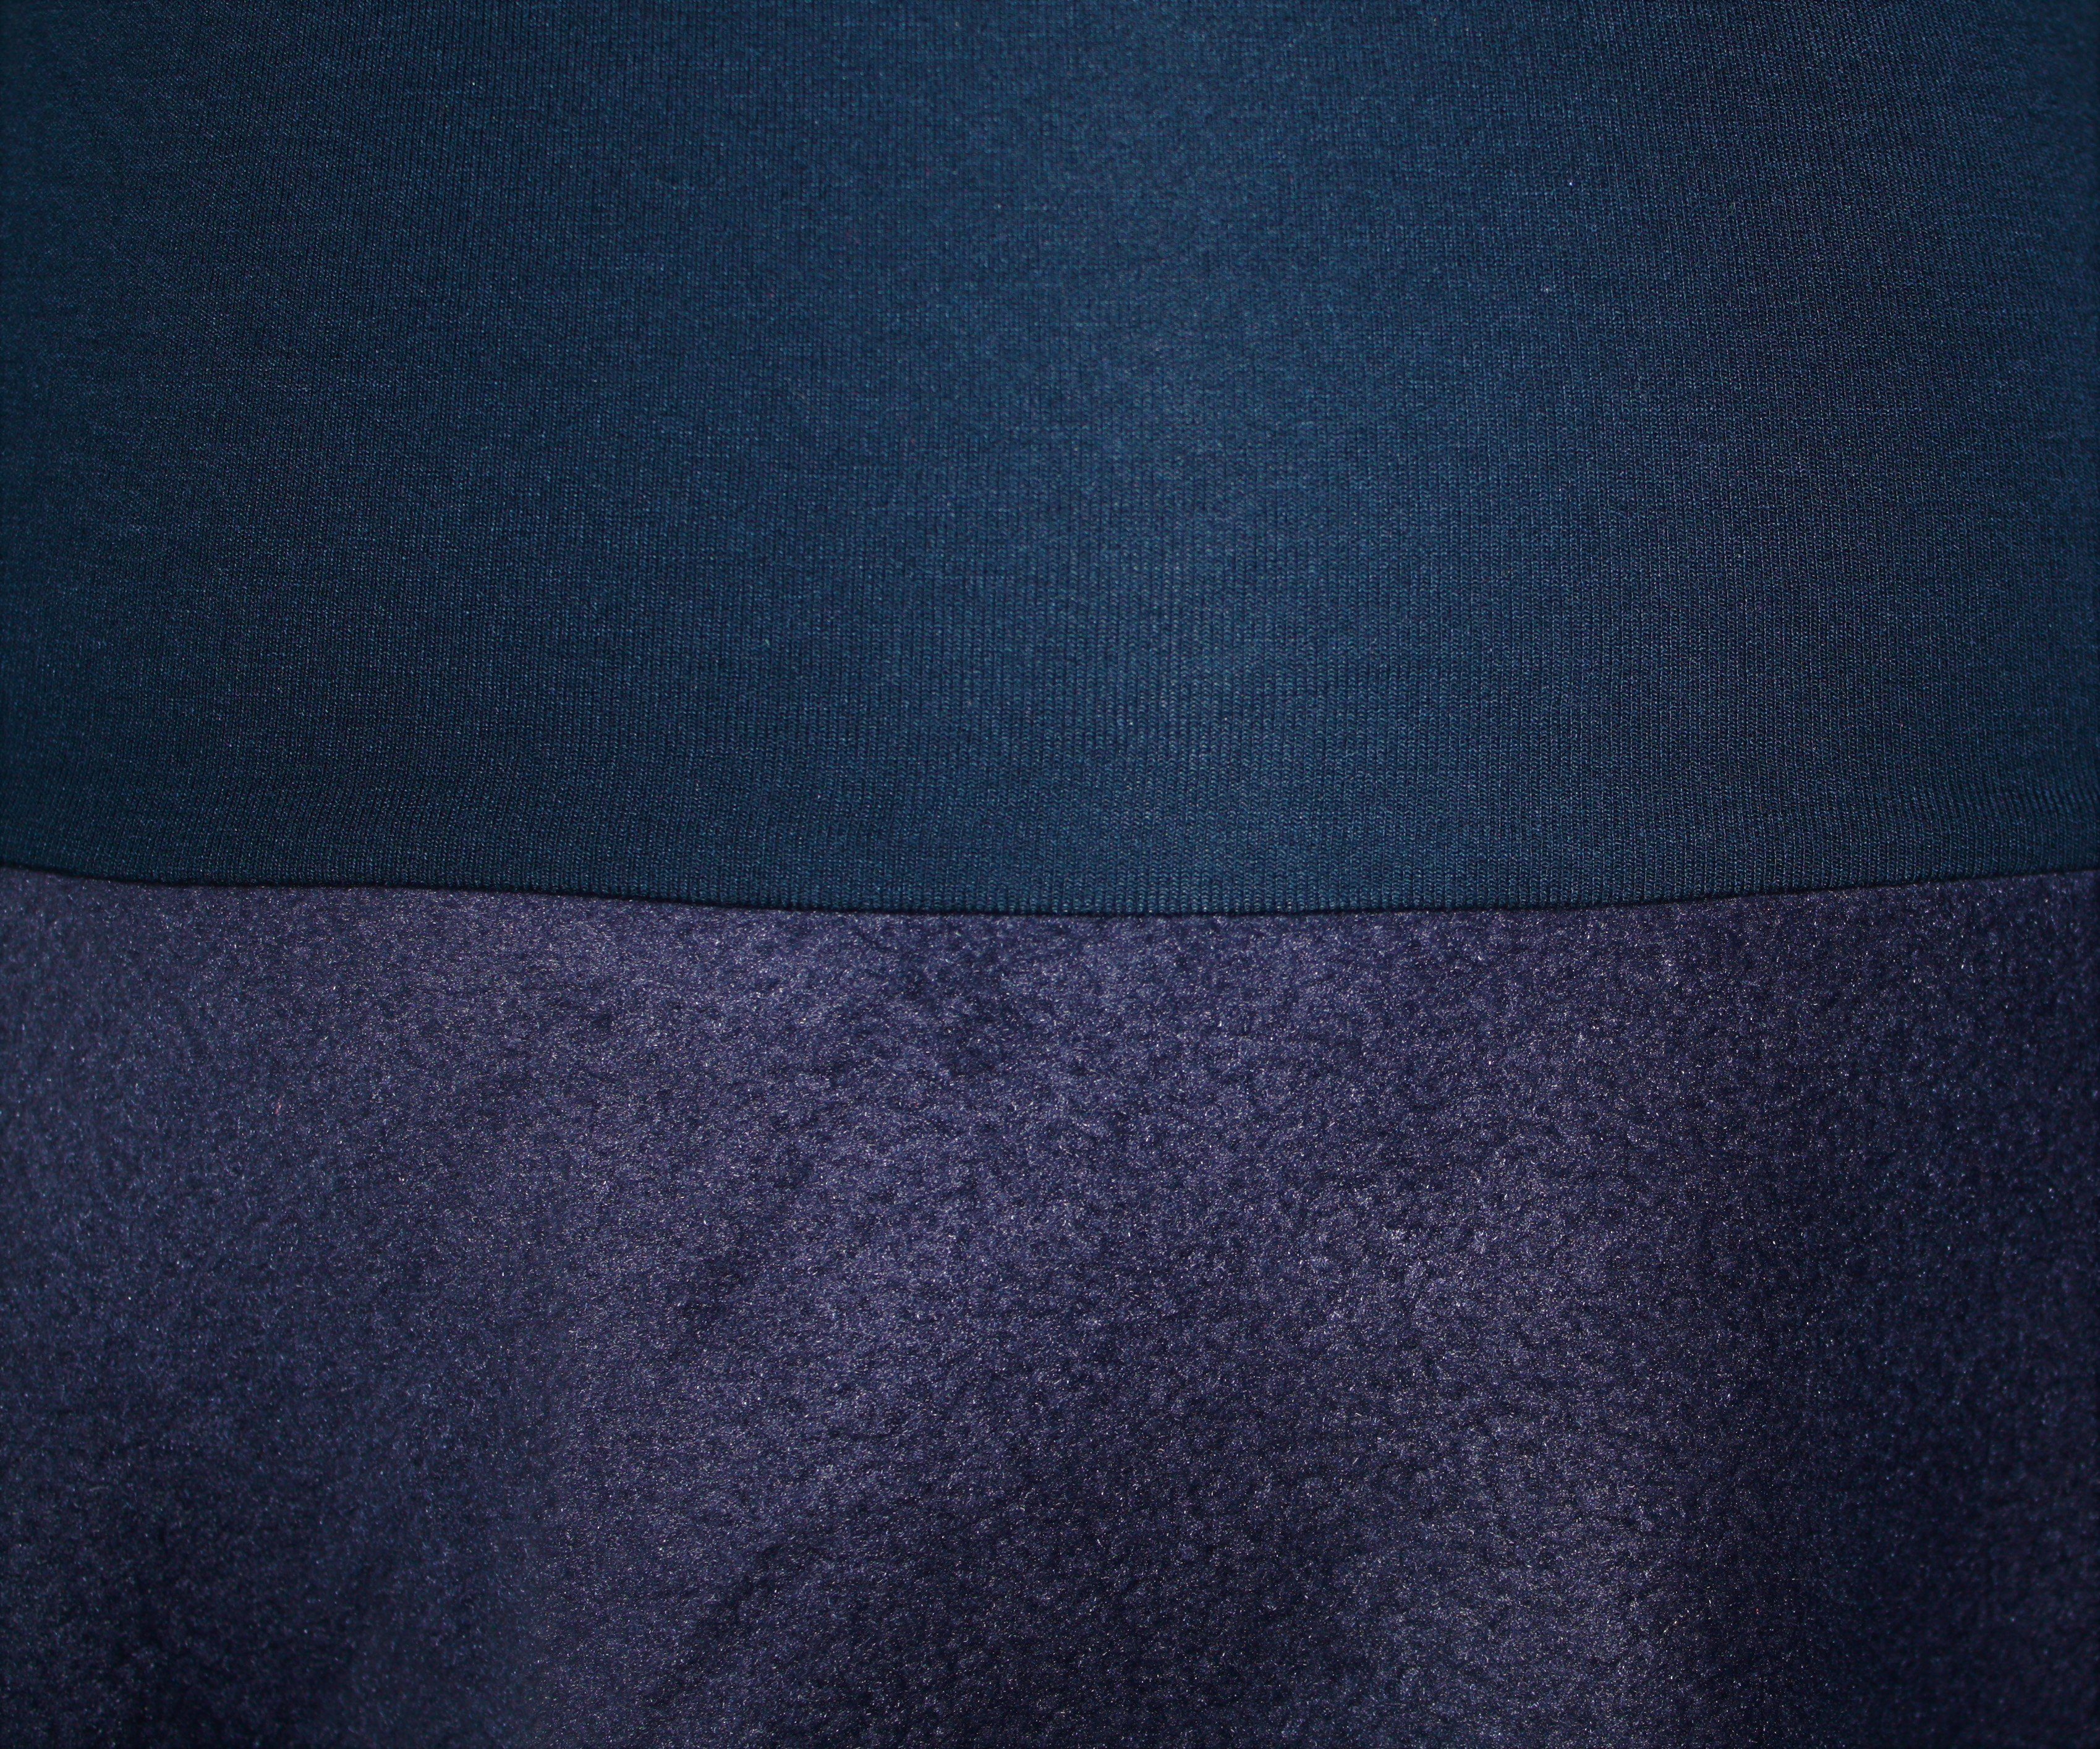 57cm dunkle design Bund elastischer Dunkelblau A-Linien-Rock Fleece Blau Bund